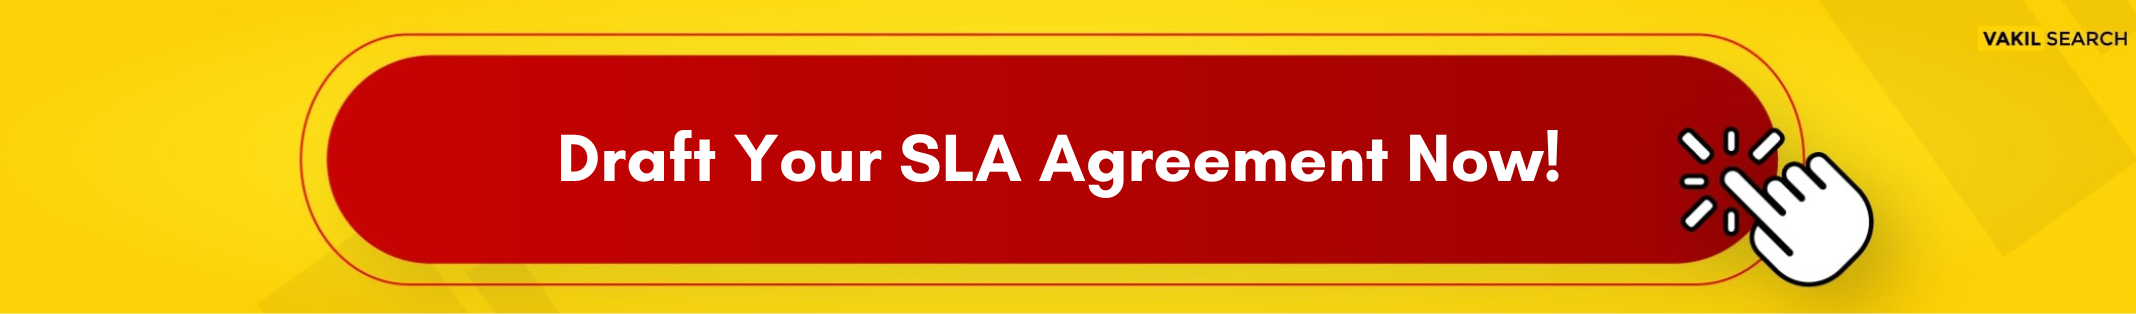 sla agreement